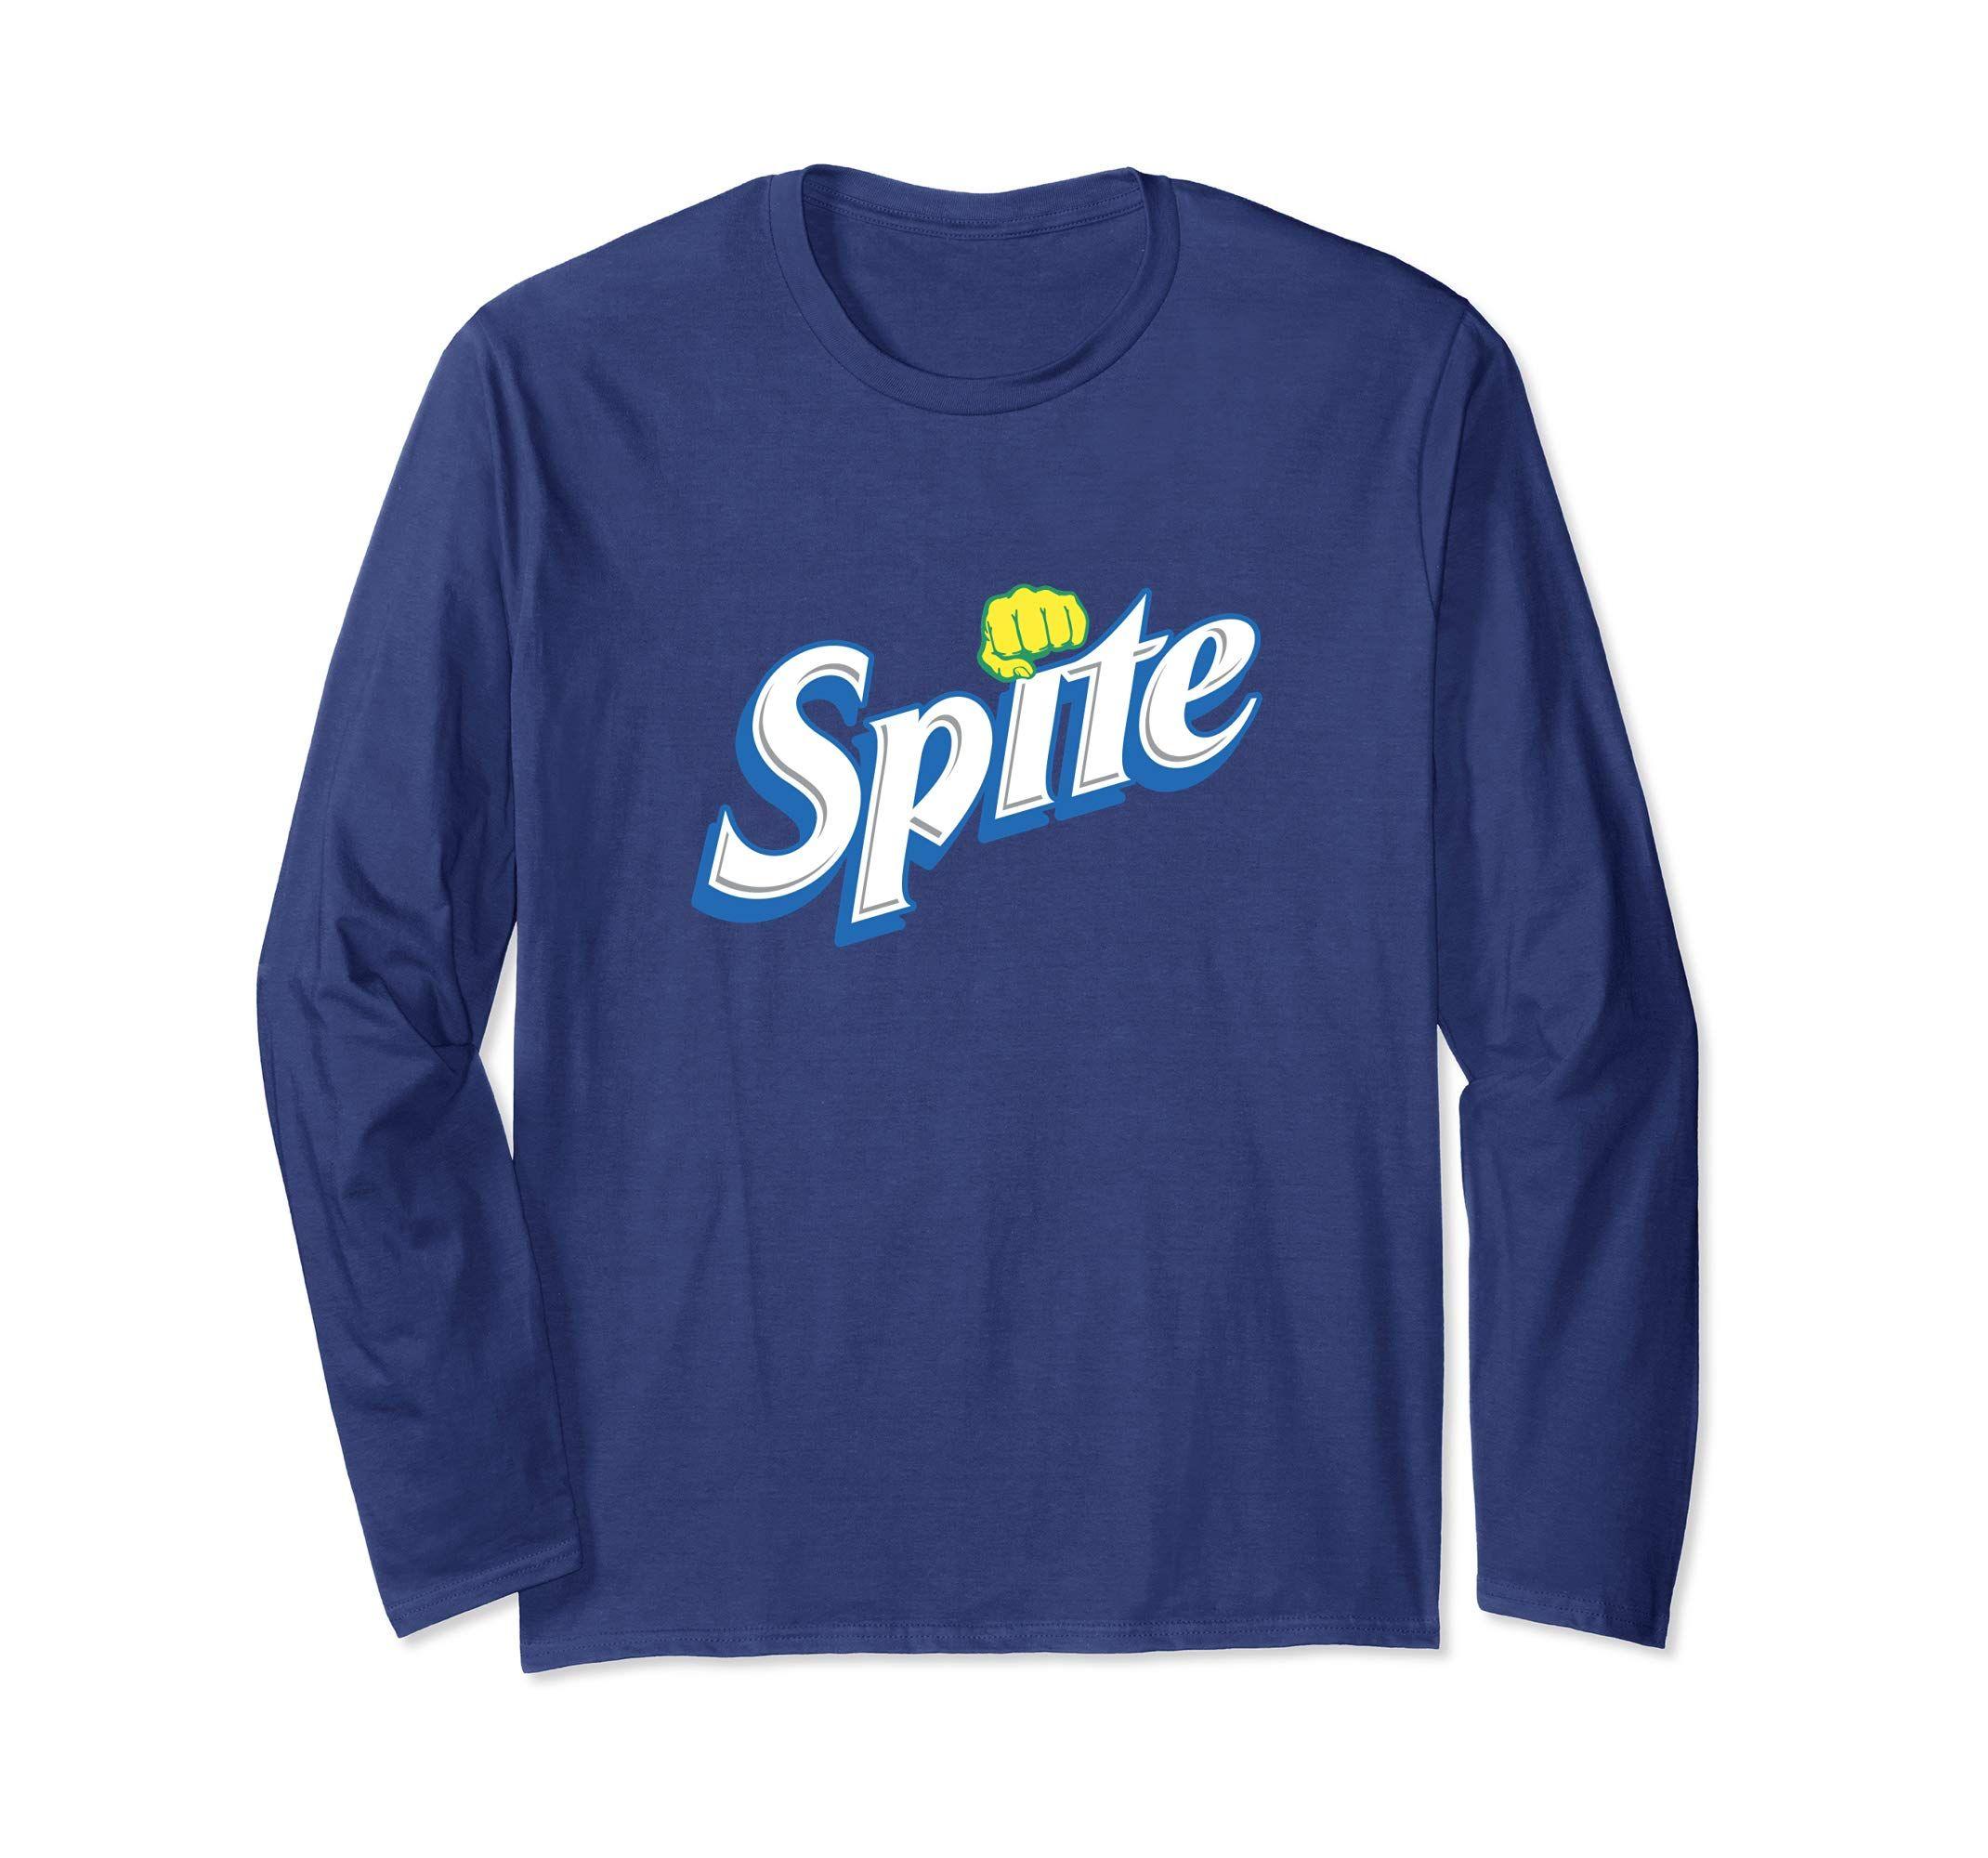 Spite Logo - Spite Novelty Funny Witty logo Parody sarcastic shirt